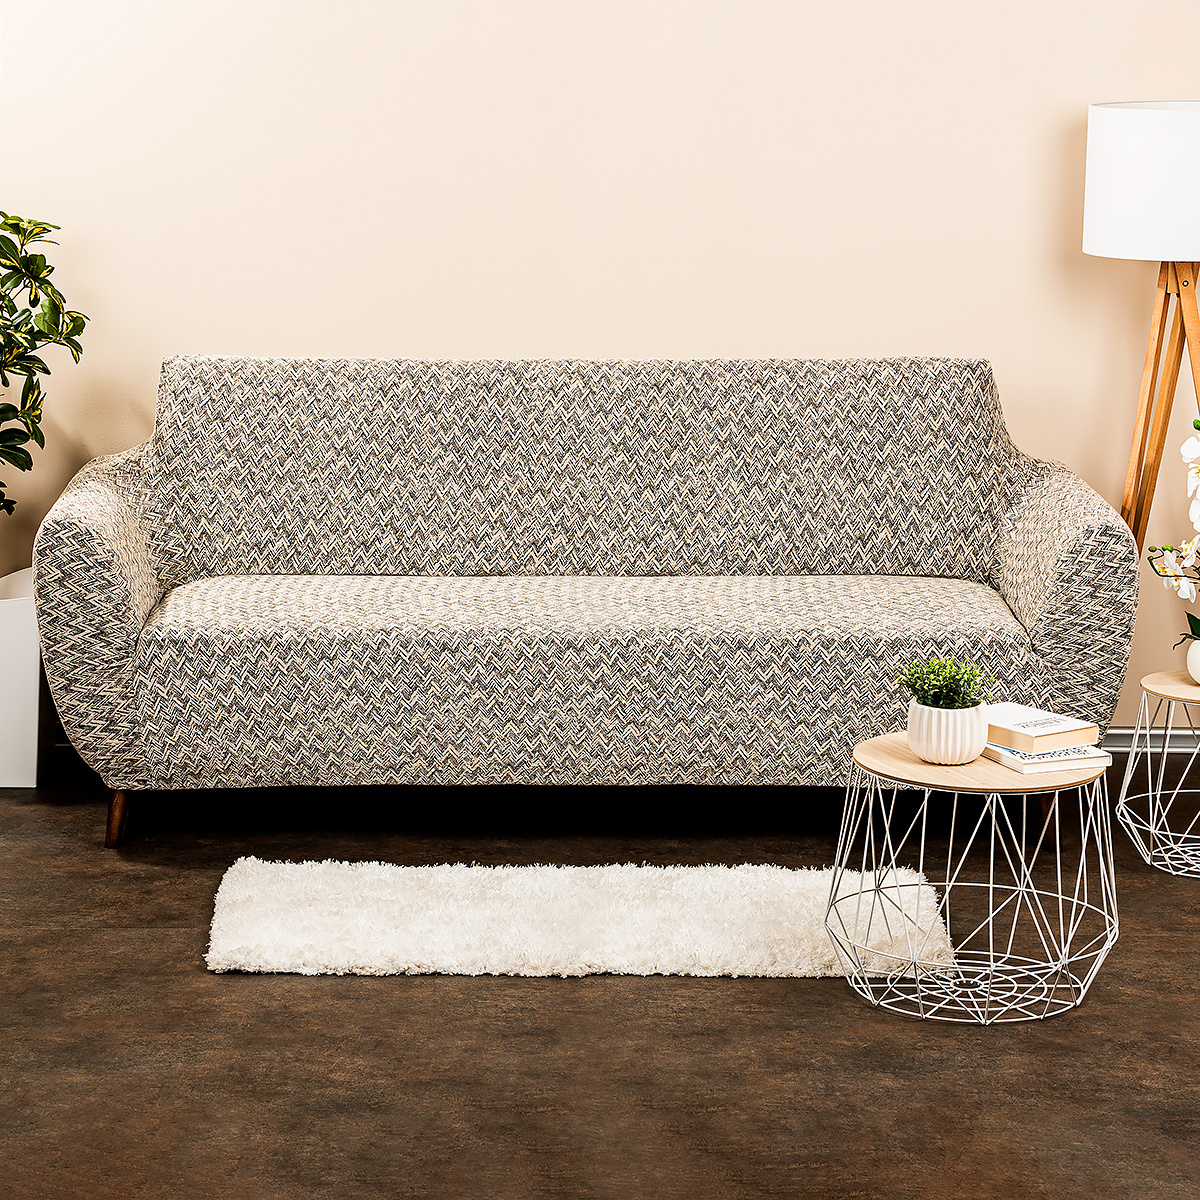 Poza Husa multielastica 4Home Comfort Plus pentru canapea, bej, 180 - 220 cm